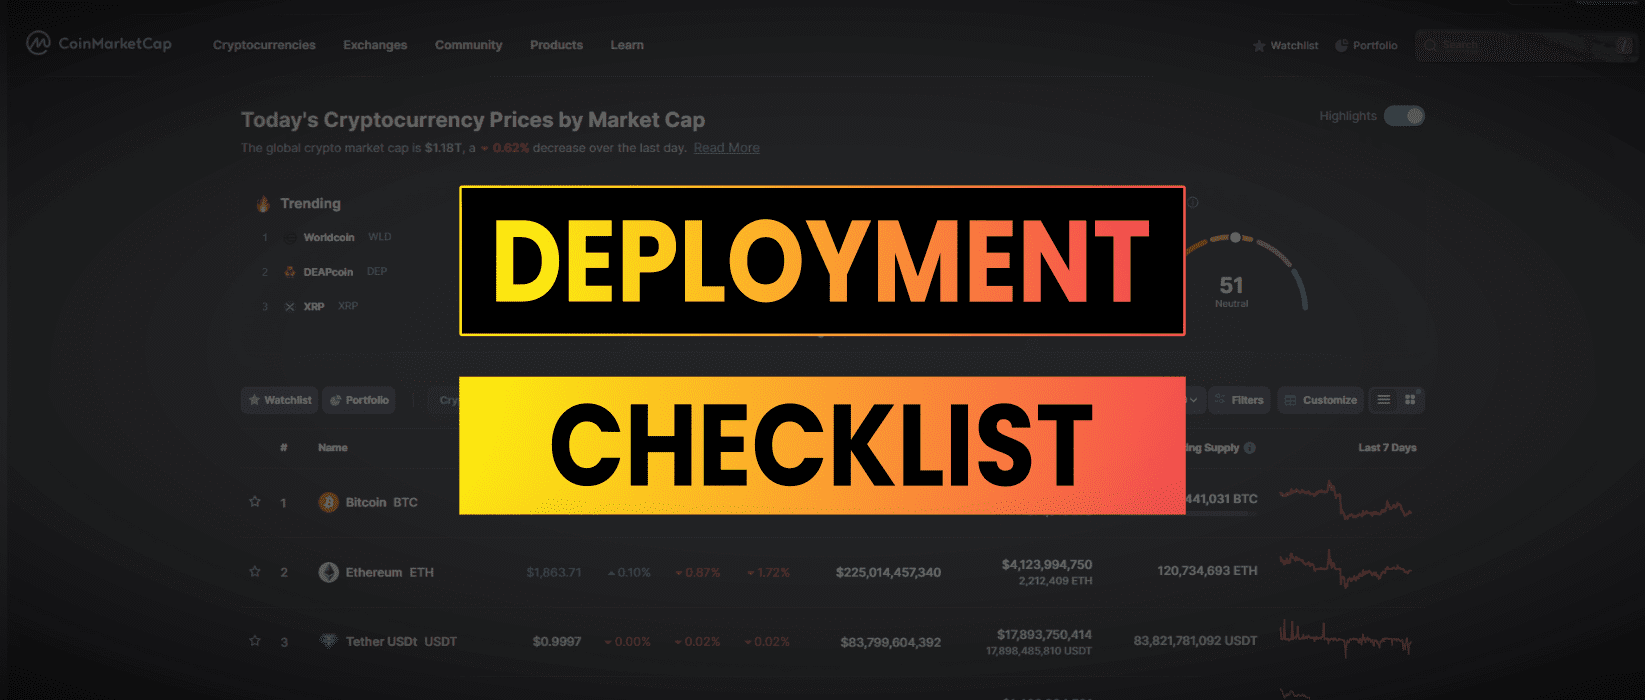 Deployment Checklist